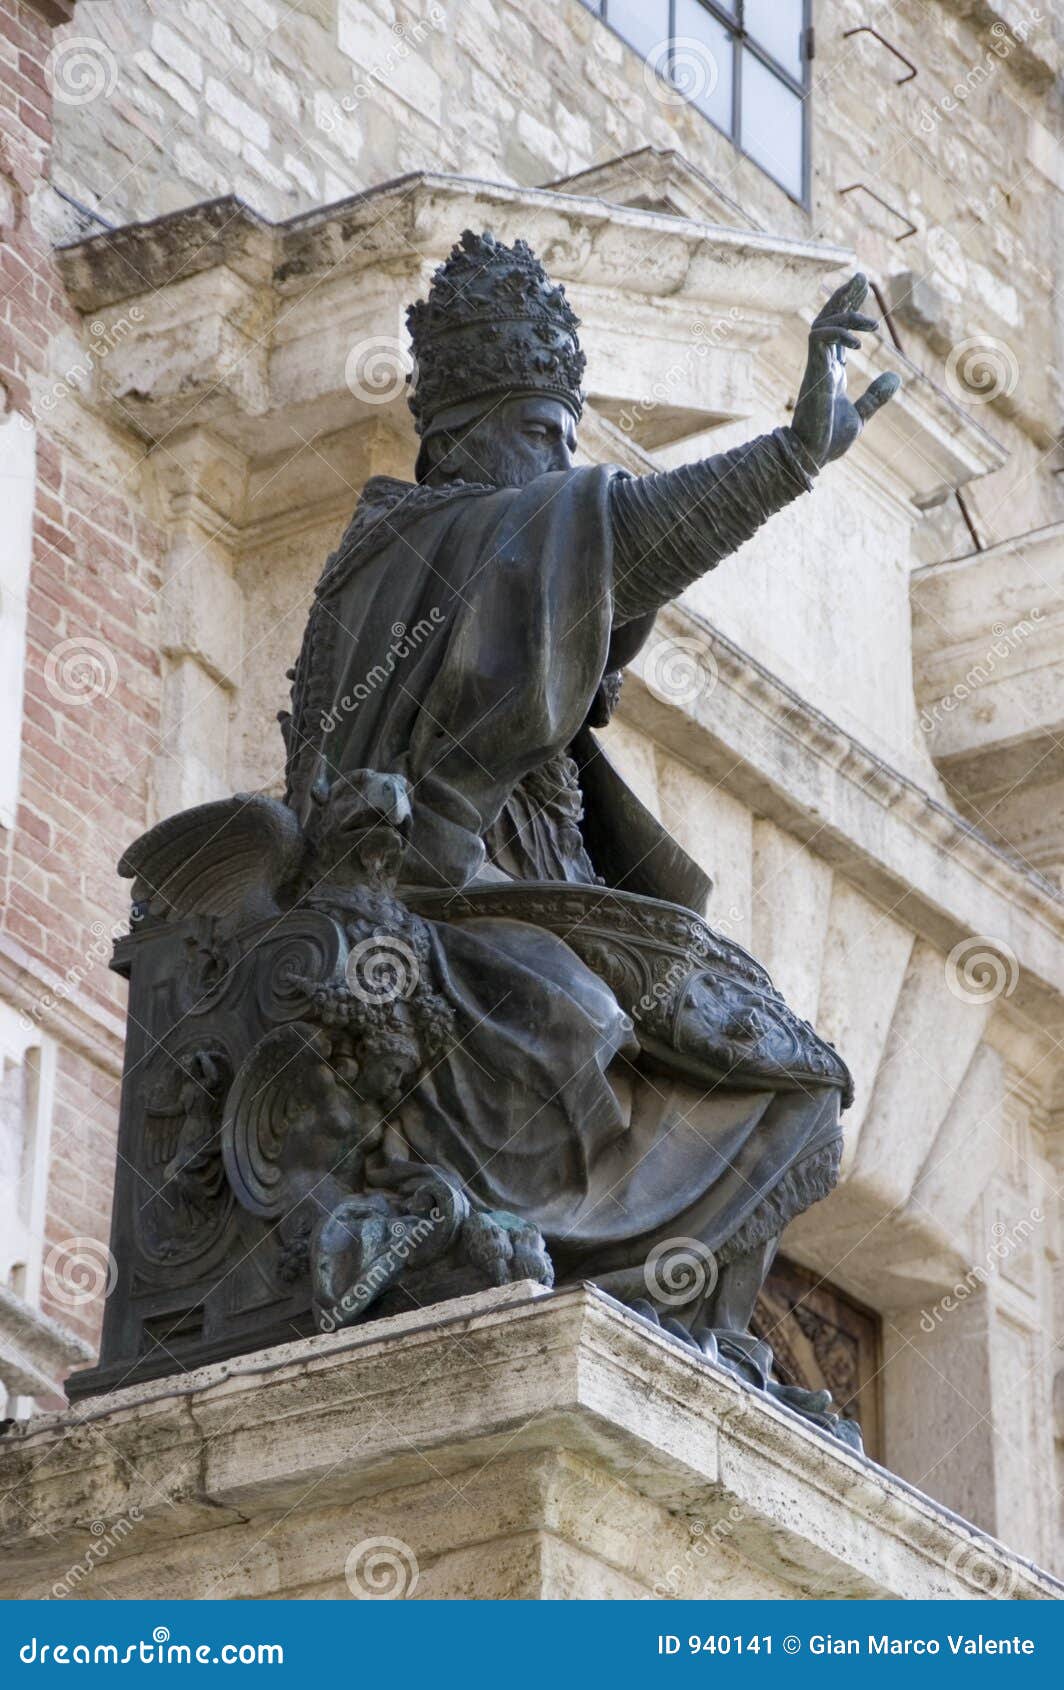 statue of pope julius iii, perugia, italy